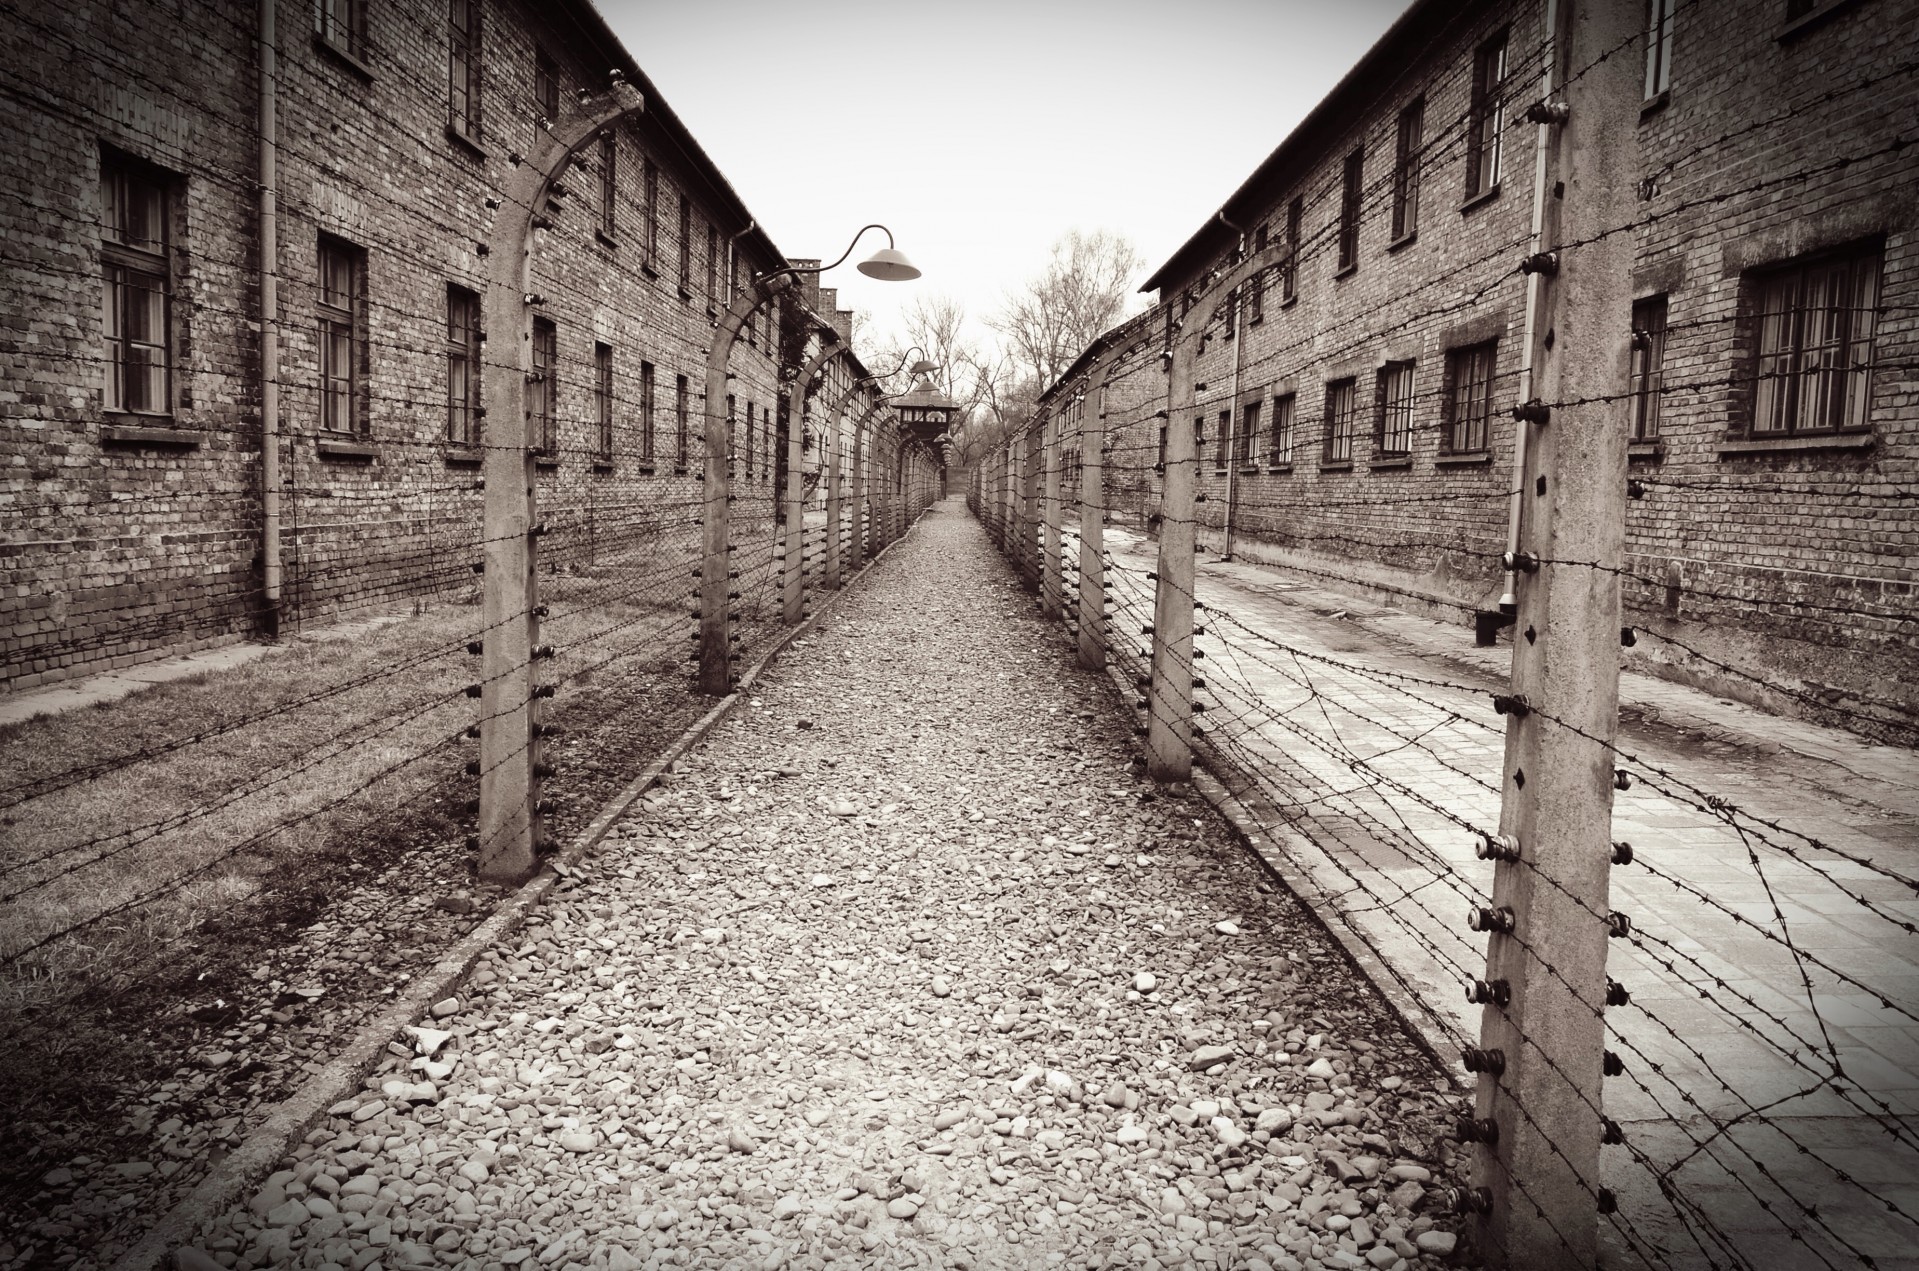 Auschwitz/birkenau concentration camp.